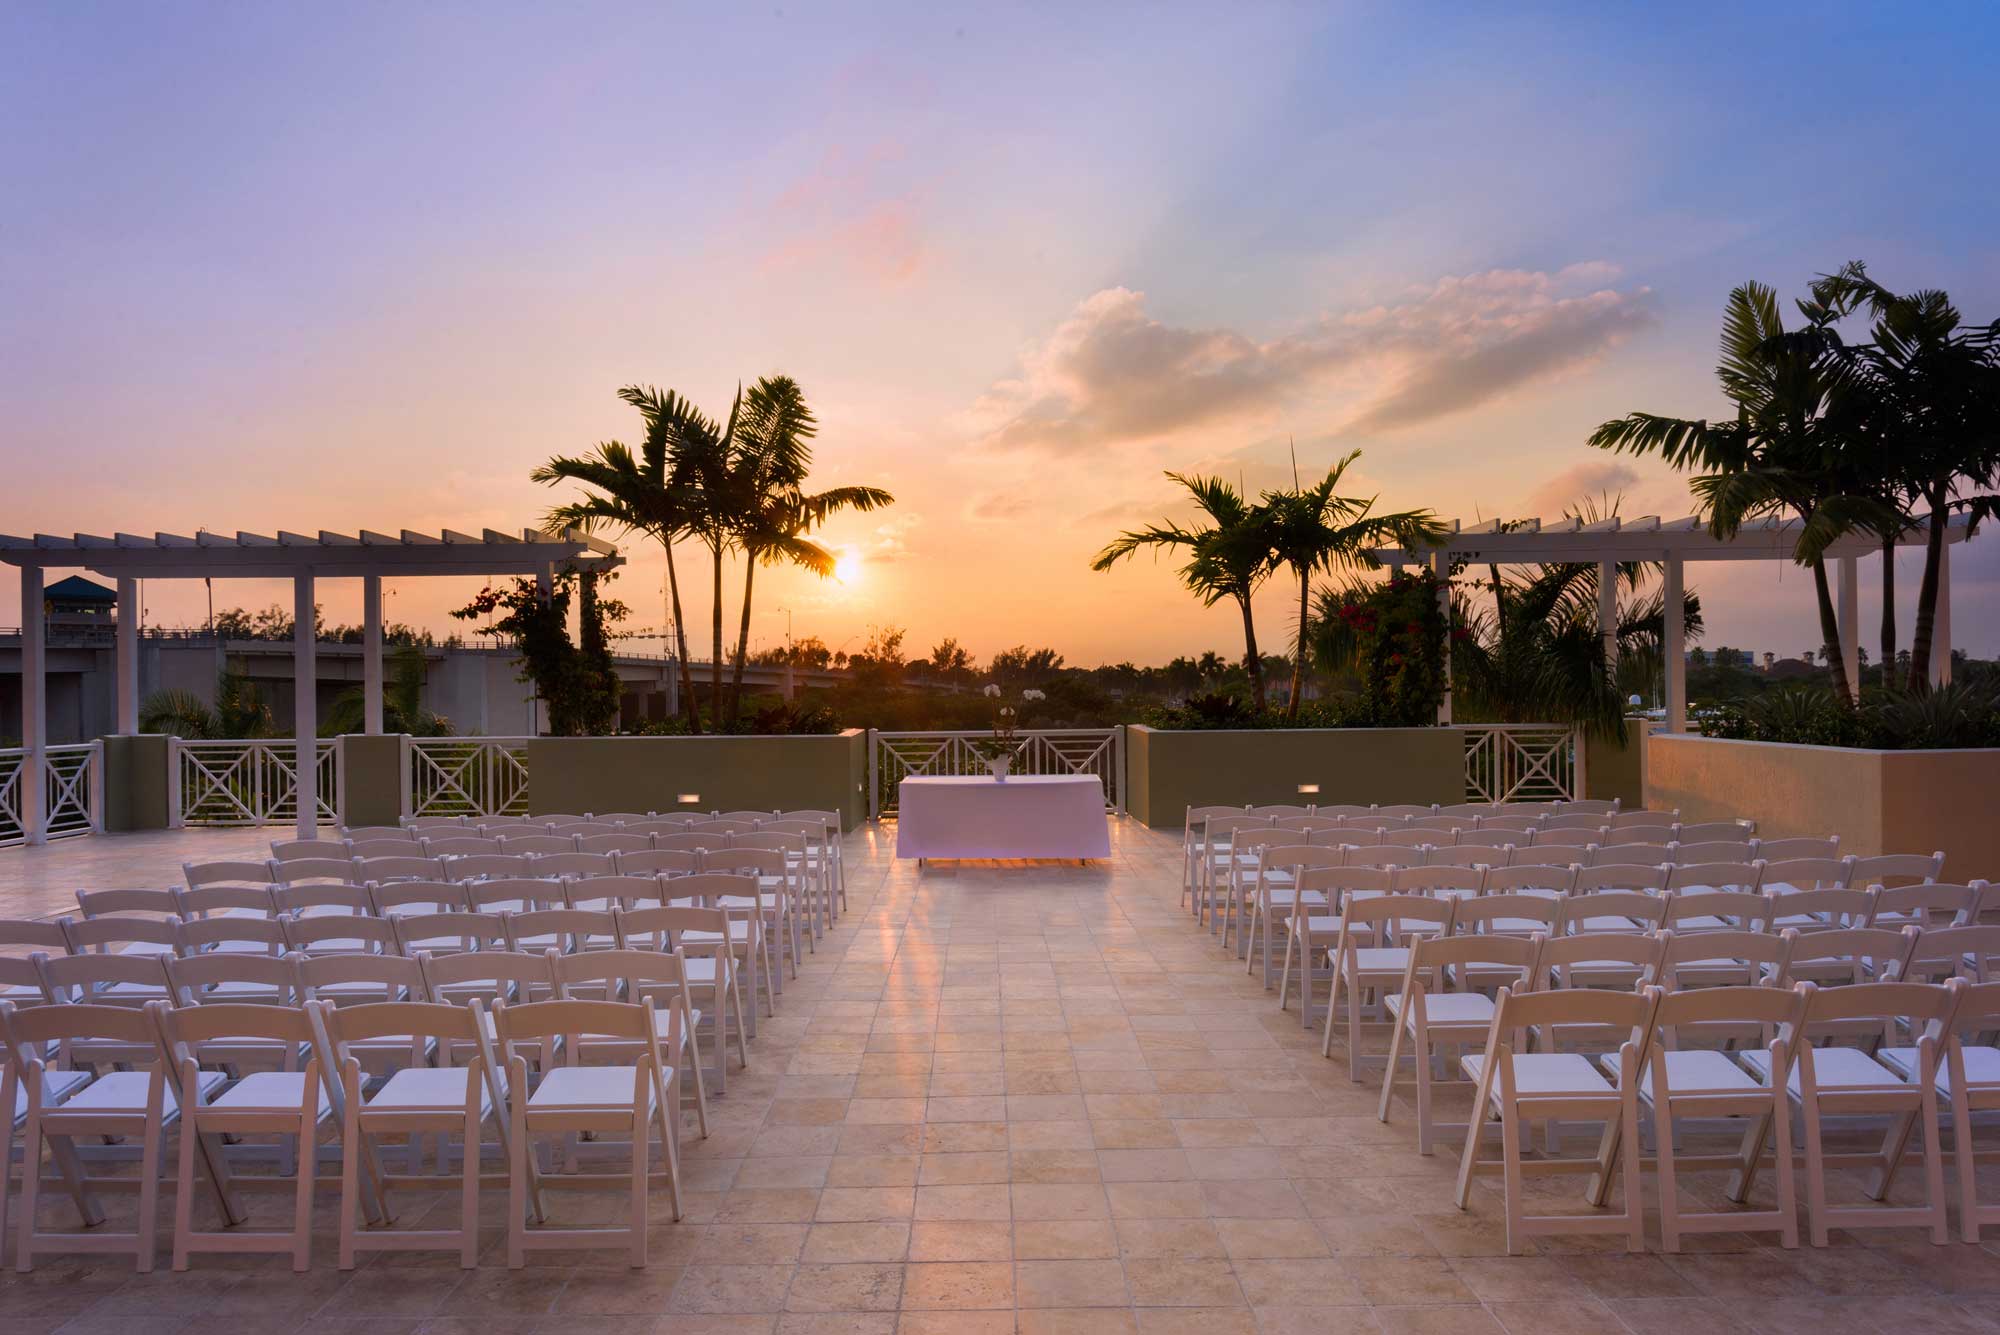 38 Wedding Venues You Have to See | Wyndham Grand Jupiter at Harbourside Place, Jupiter, Florida